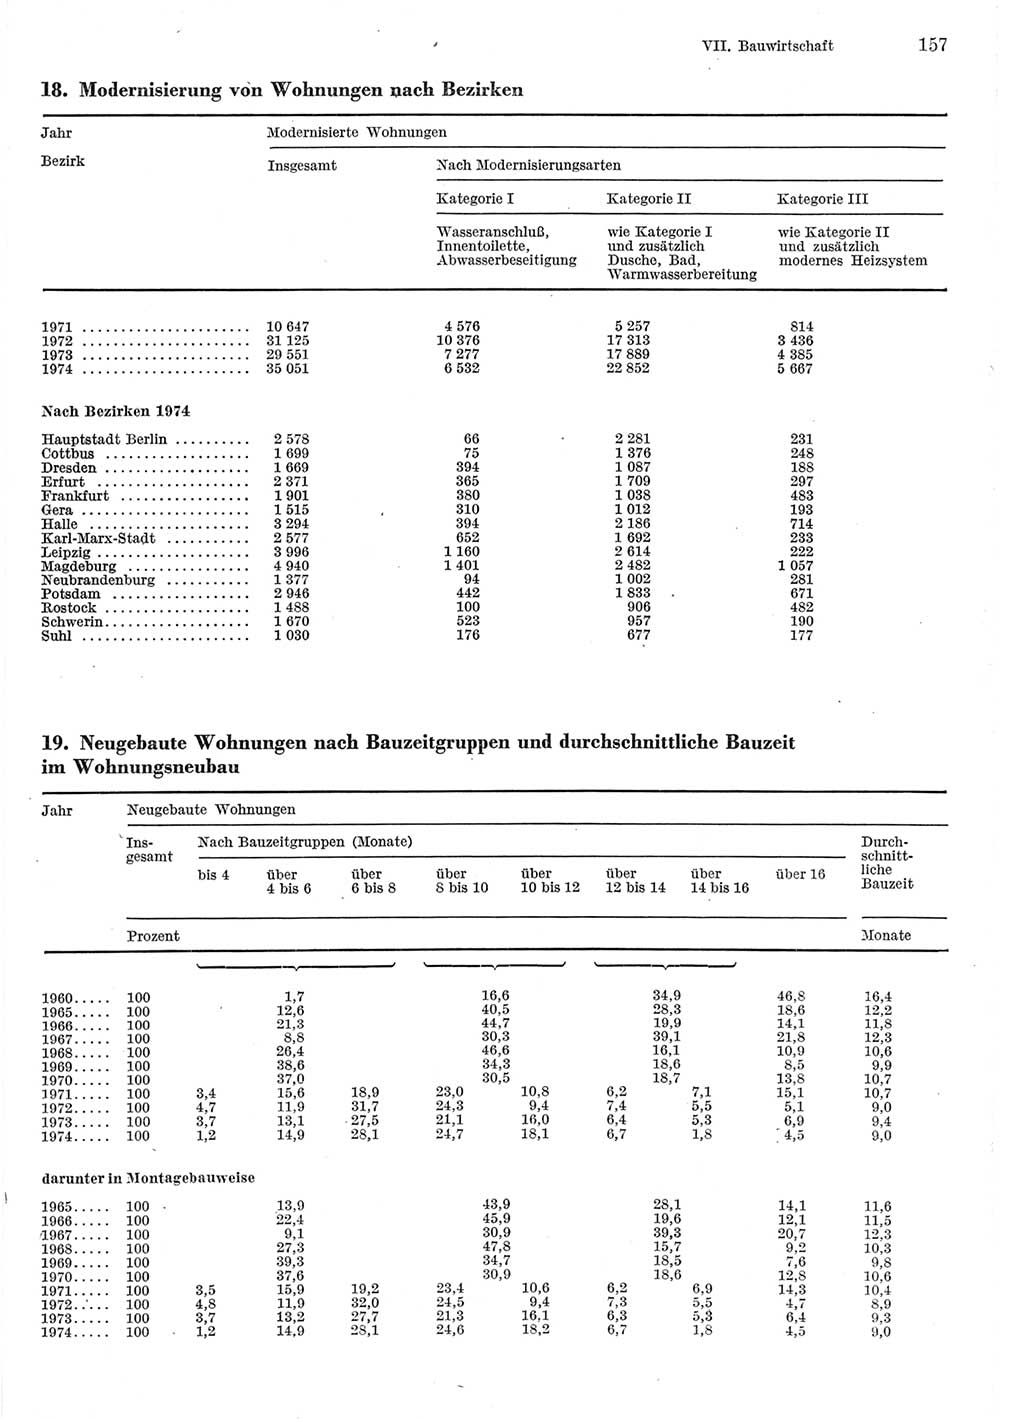 Statistisches Jahrbuch der Deutschen Demokratischen Republik (DDR) 1975, Seite 157 (Stat. Jb. DDR 1975, S. 157)